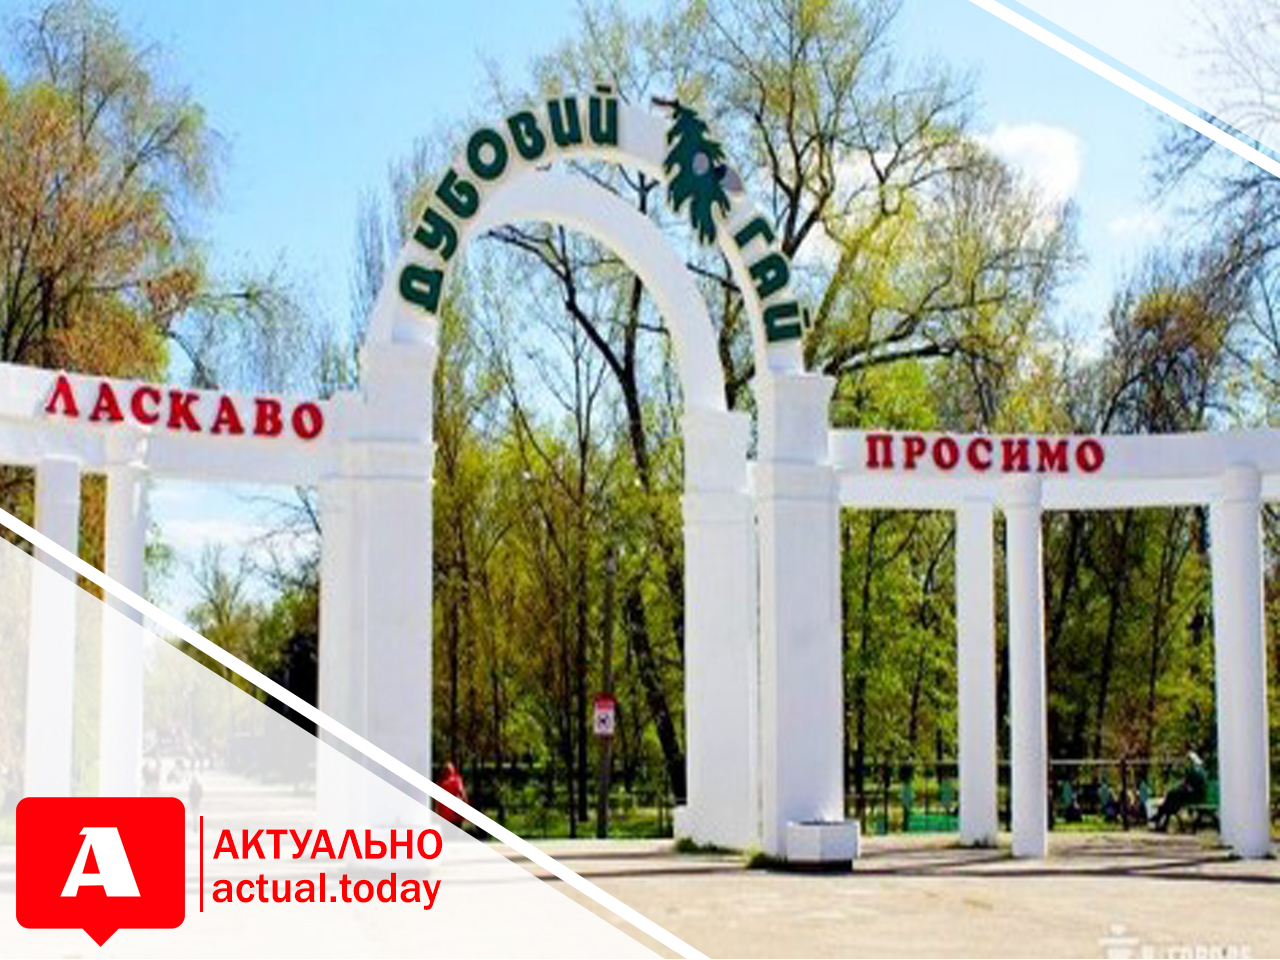 На территории запорожского парка “Дубовая роща” демонтировали детскую автошколу и незаконно вывезли тротуарную плитку